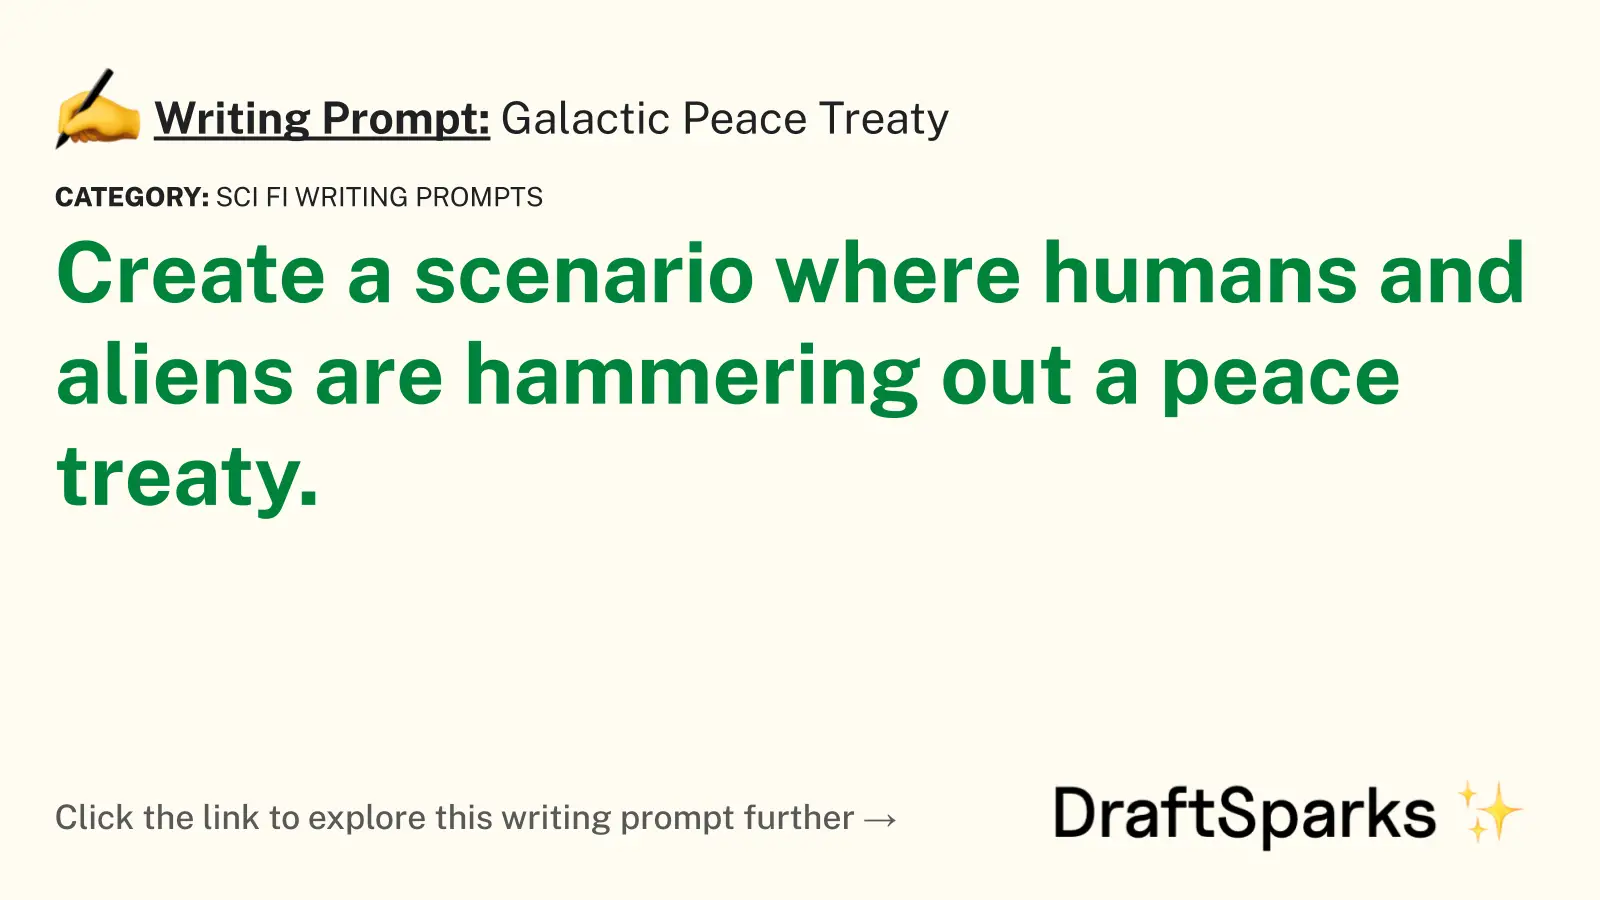 Galactic Peace Treaty